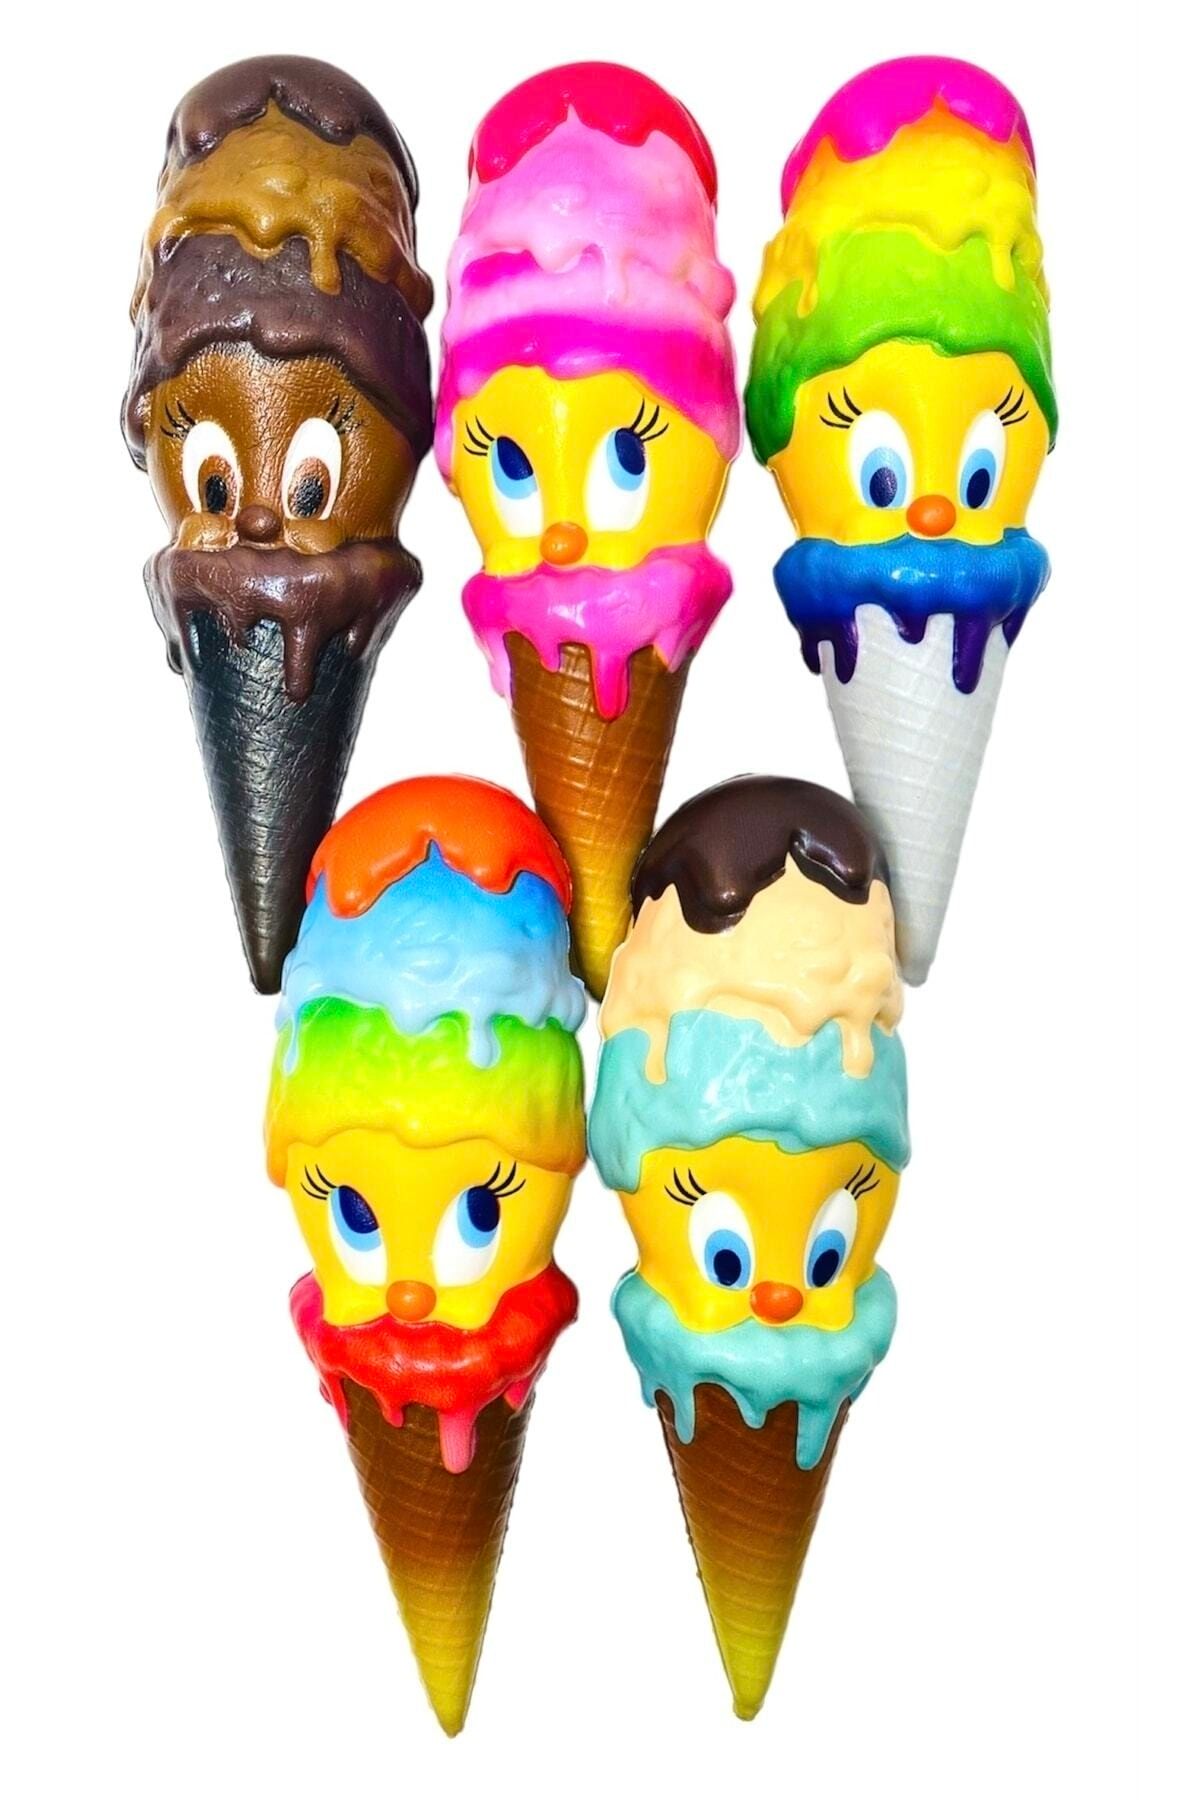 oyuncakçısavaş &europe shop Tweety Sukuşi Oyuncak Dondurma Dev Boy 18 Cm